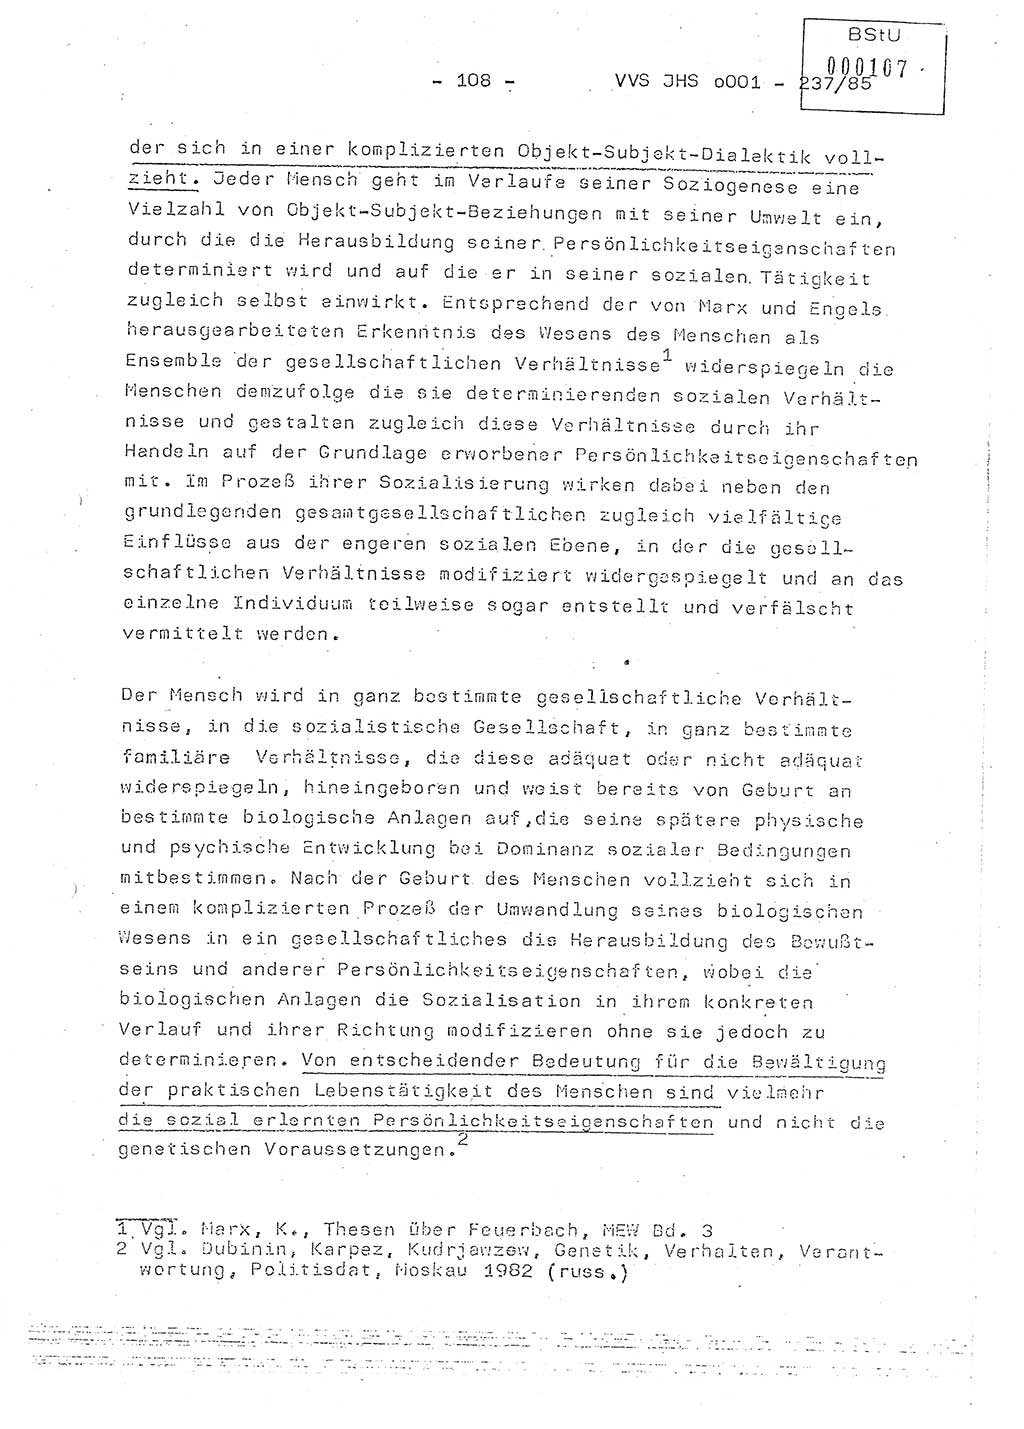 Dissertation Oberstleutnant Peter Jakulski (JHS), Oberstleutnat Christian Rudolph (HA Ⅸ), Major Horst Böttger (ZMD), Major Wolfgang Grüneberg (JHS), Major Albert Meutsch (JHS), Ministerium für Staatssicherheit (MfS) [Deutsche Demokratische Republik (DDR)], Juristische Hochschule (JHS), Vertrauliche Verschlußsache (VVS) o001-237/85, Potsdam 1985, Seite 108 (Diss. MfS DDR JHS VVS o001-237/85 1985, S. 108)